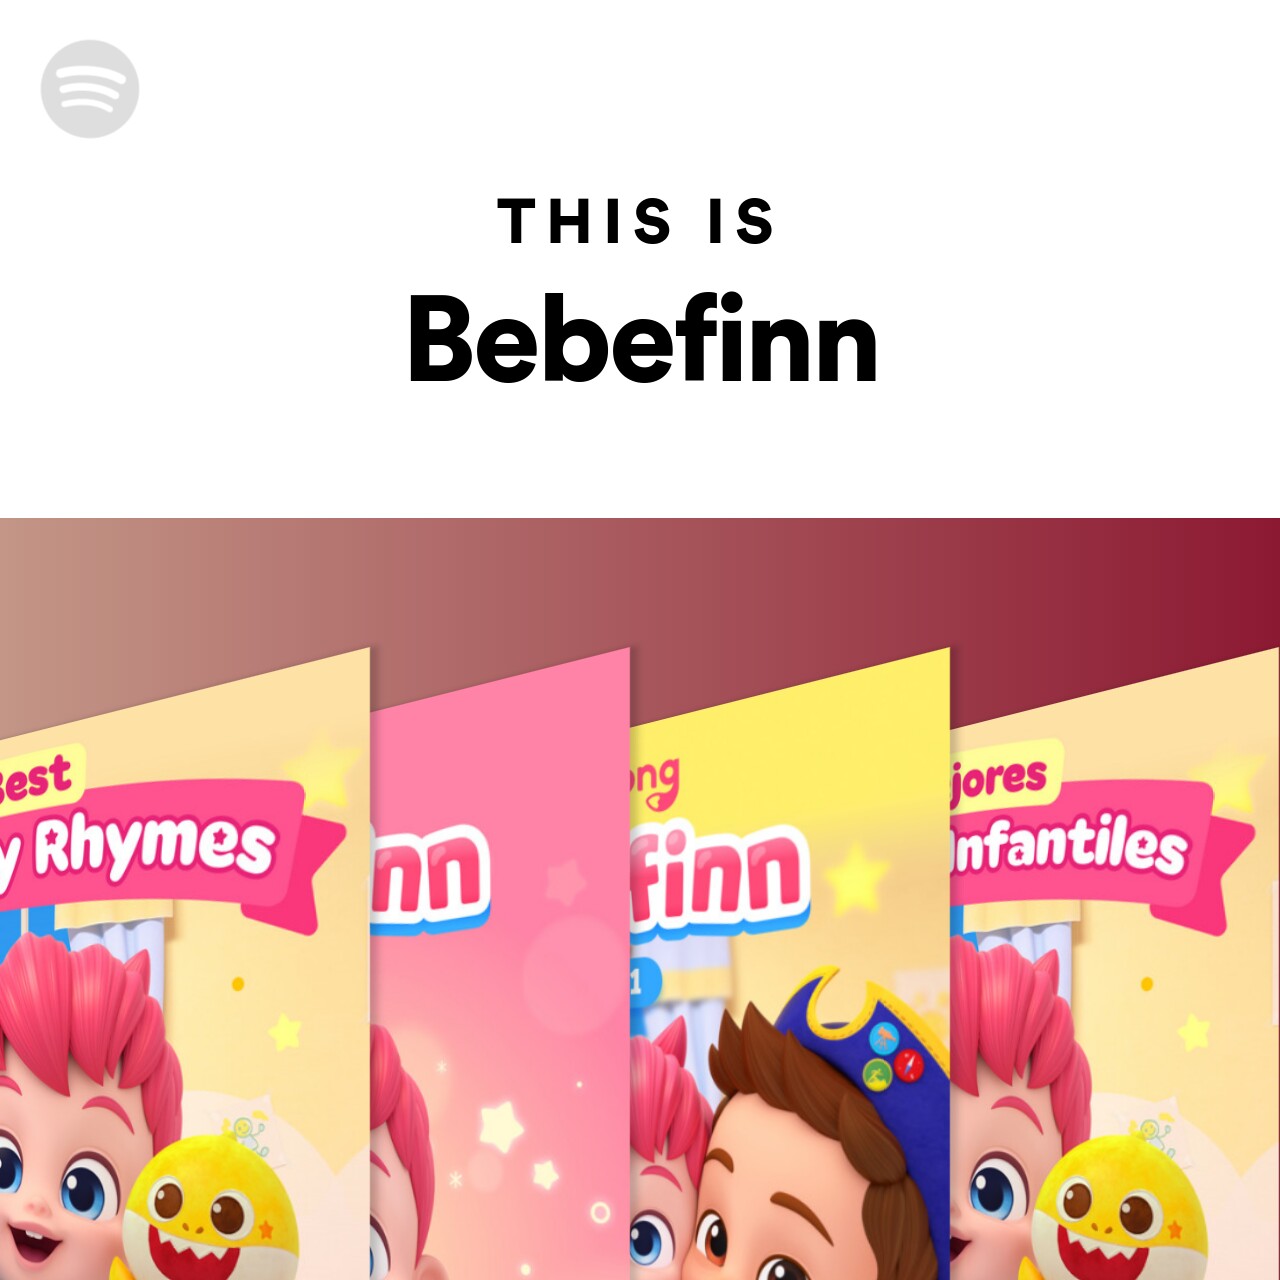 This Is Bebefinn